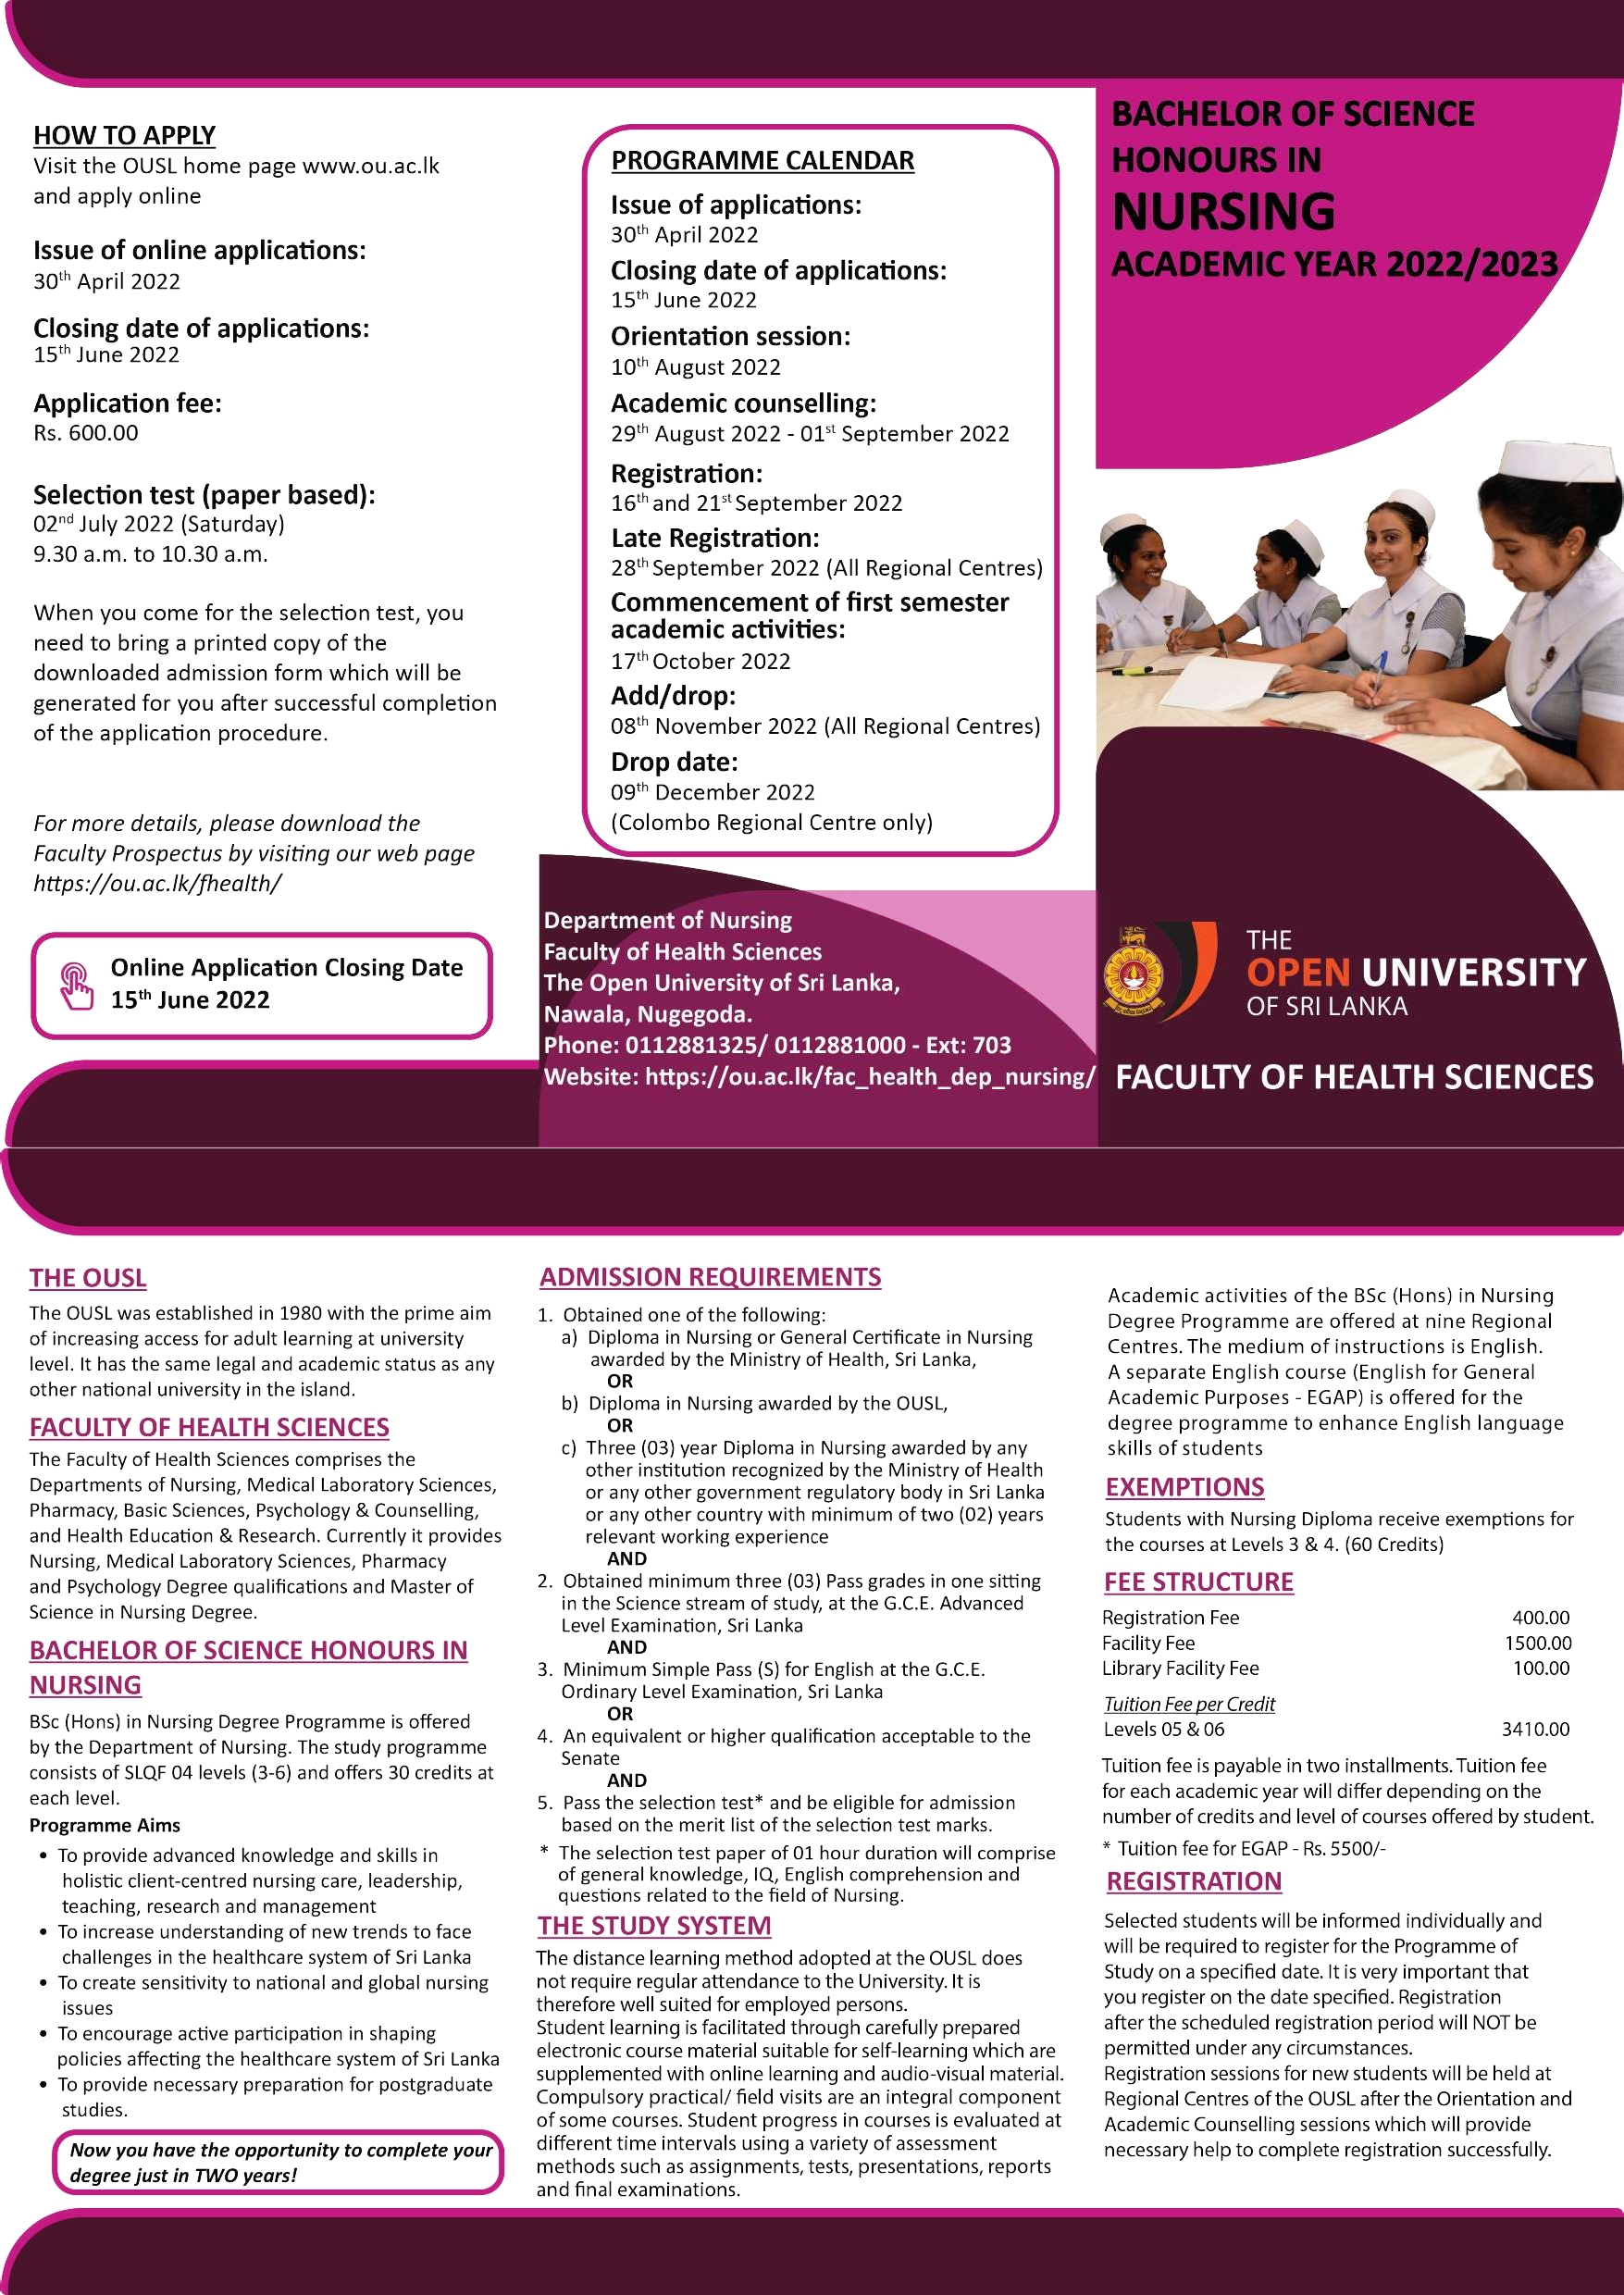 Bachelor of Science Honours in Nursing Degree 2022 - Open University of Sri Lanka (OUSL) Degree